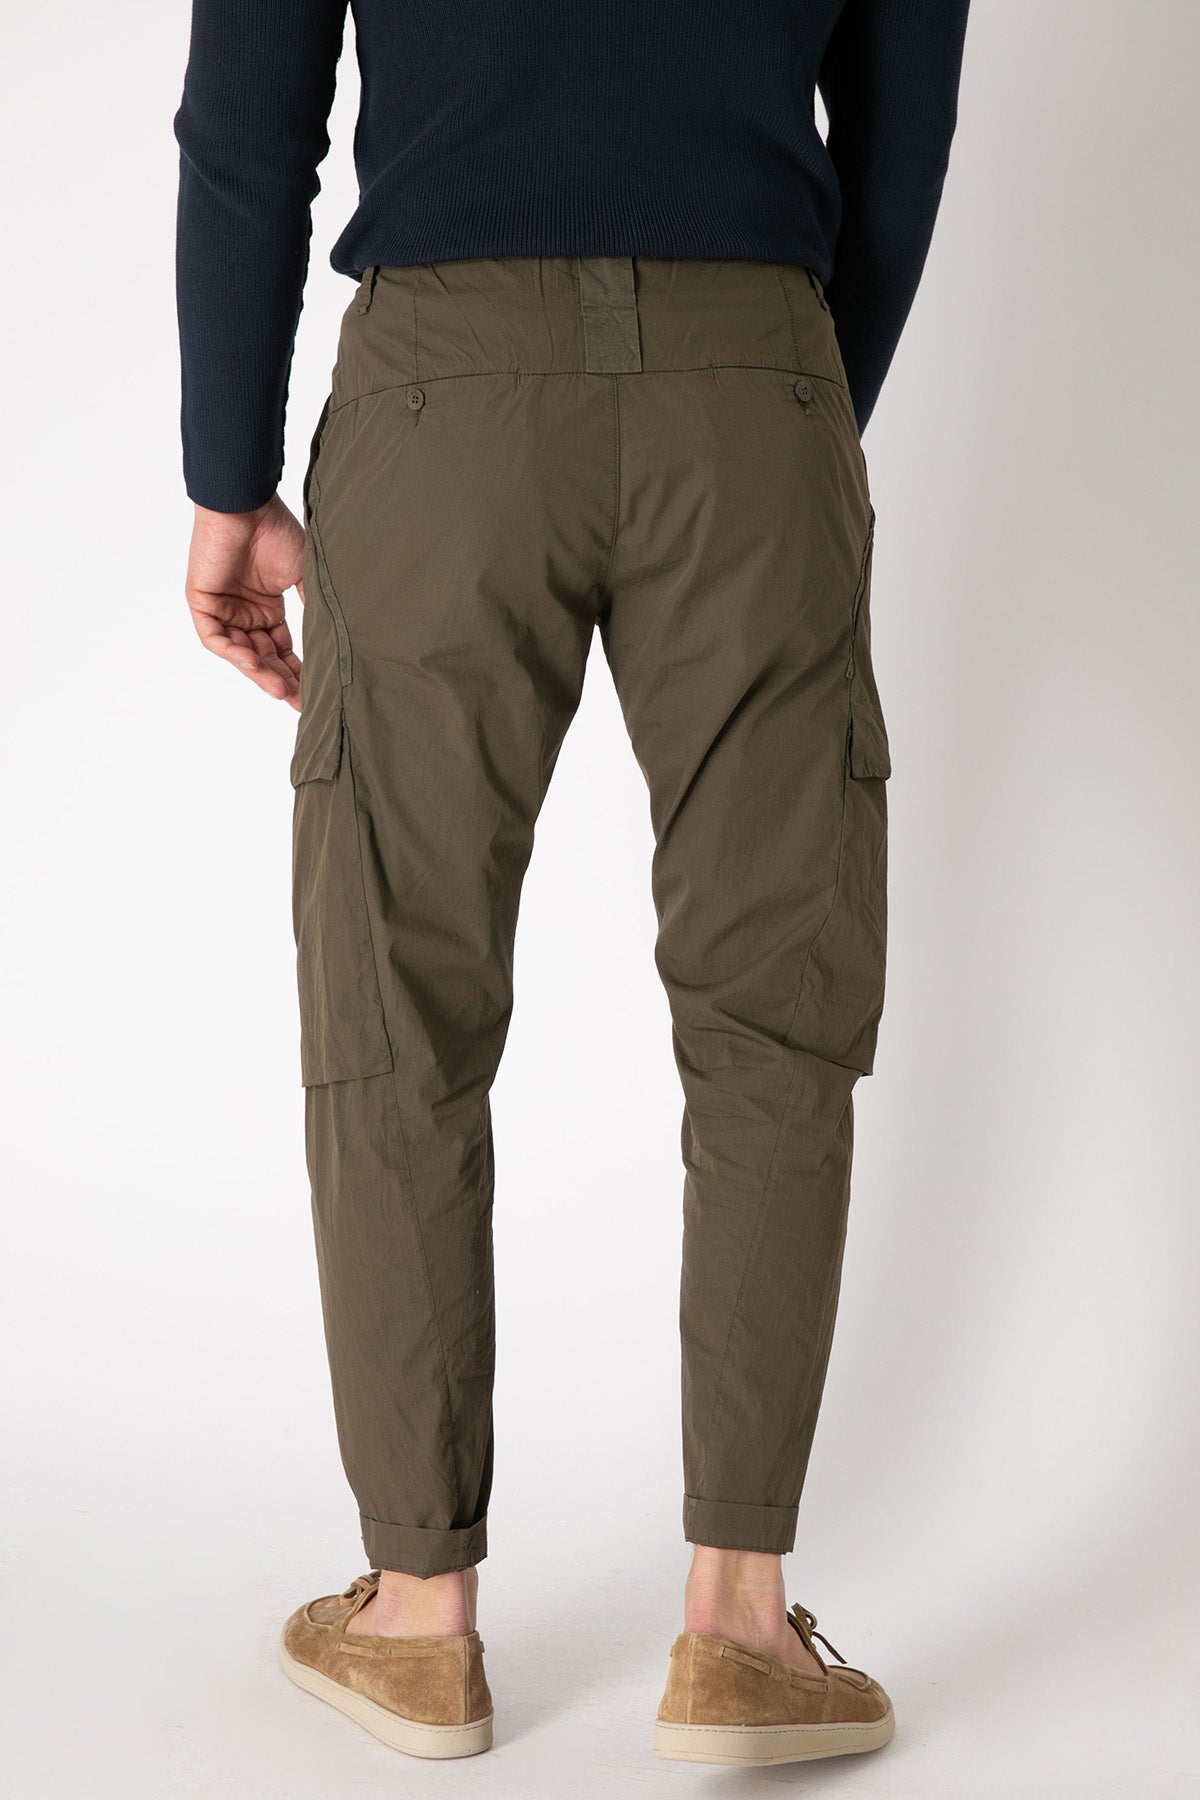 Transit Kargo Cep Detaylı Pantolon-Libas Trendy Fashion Store